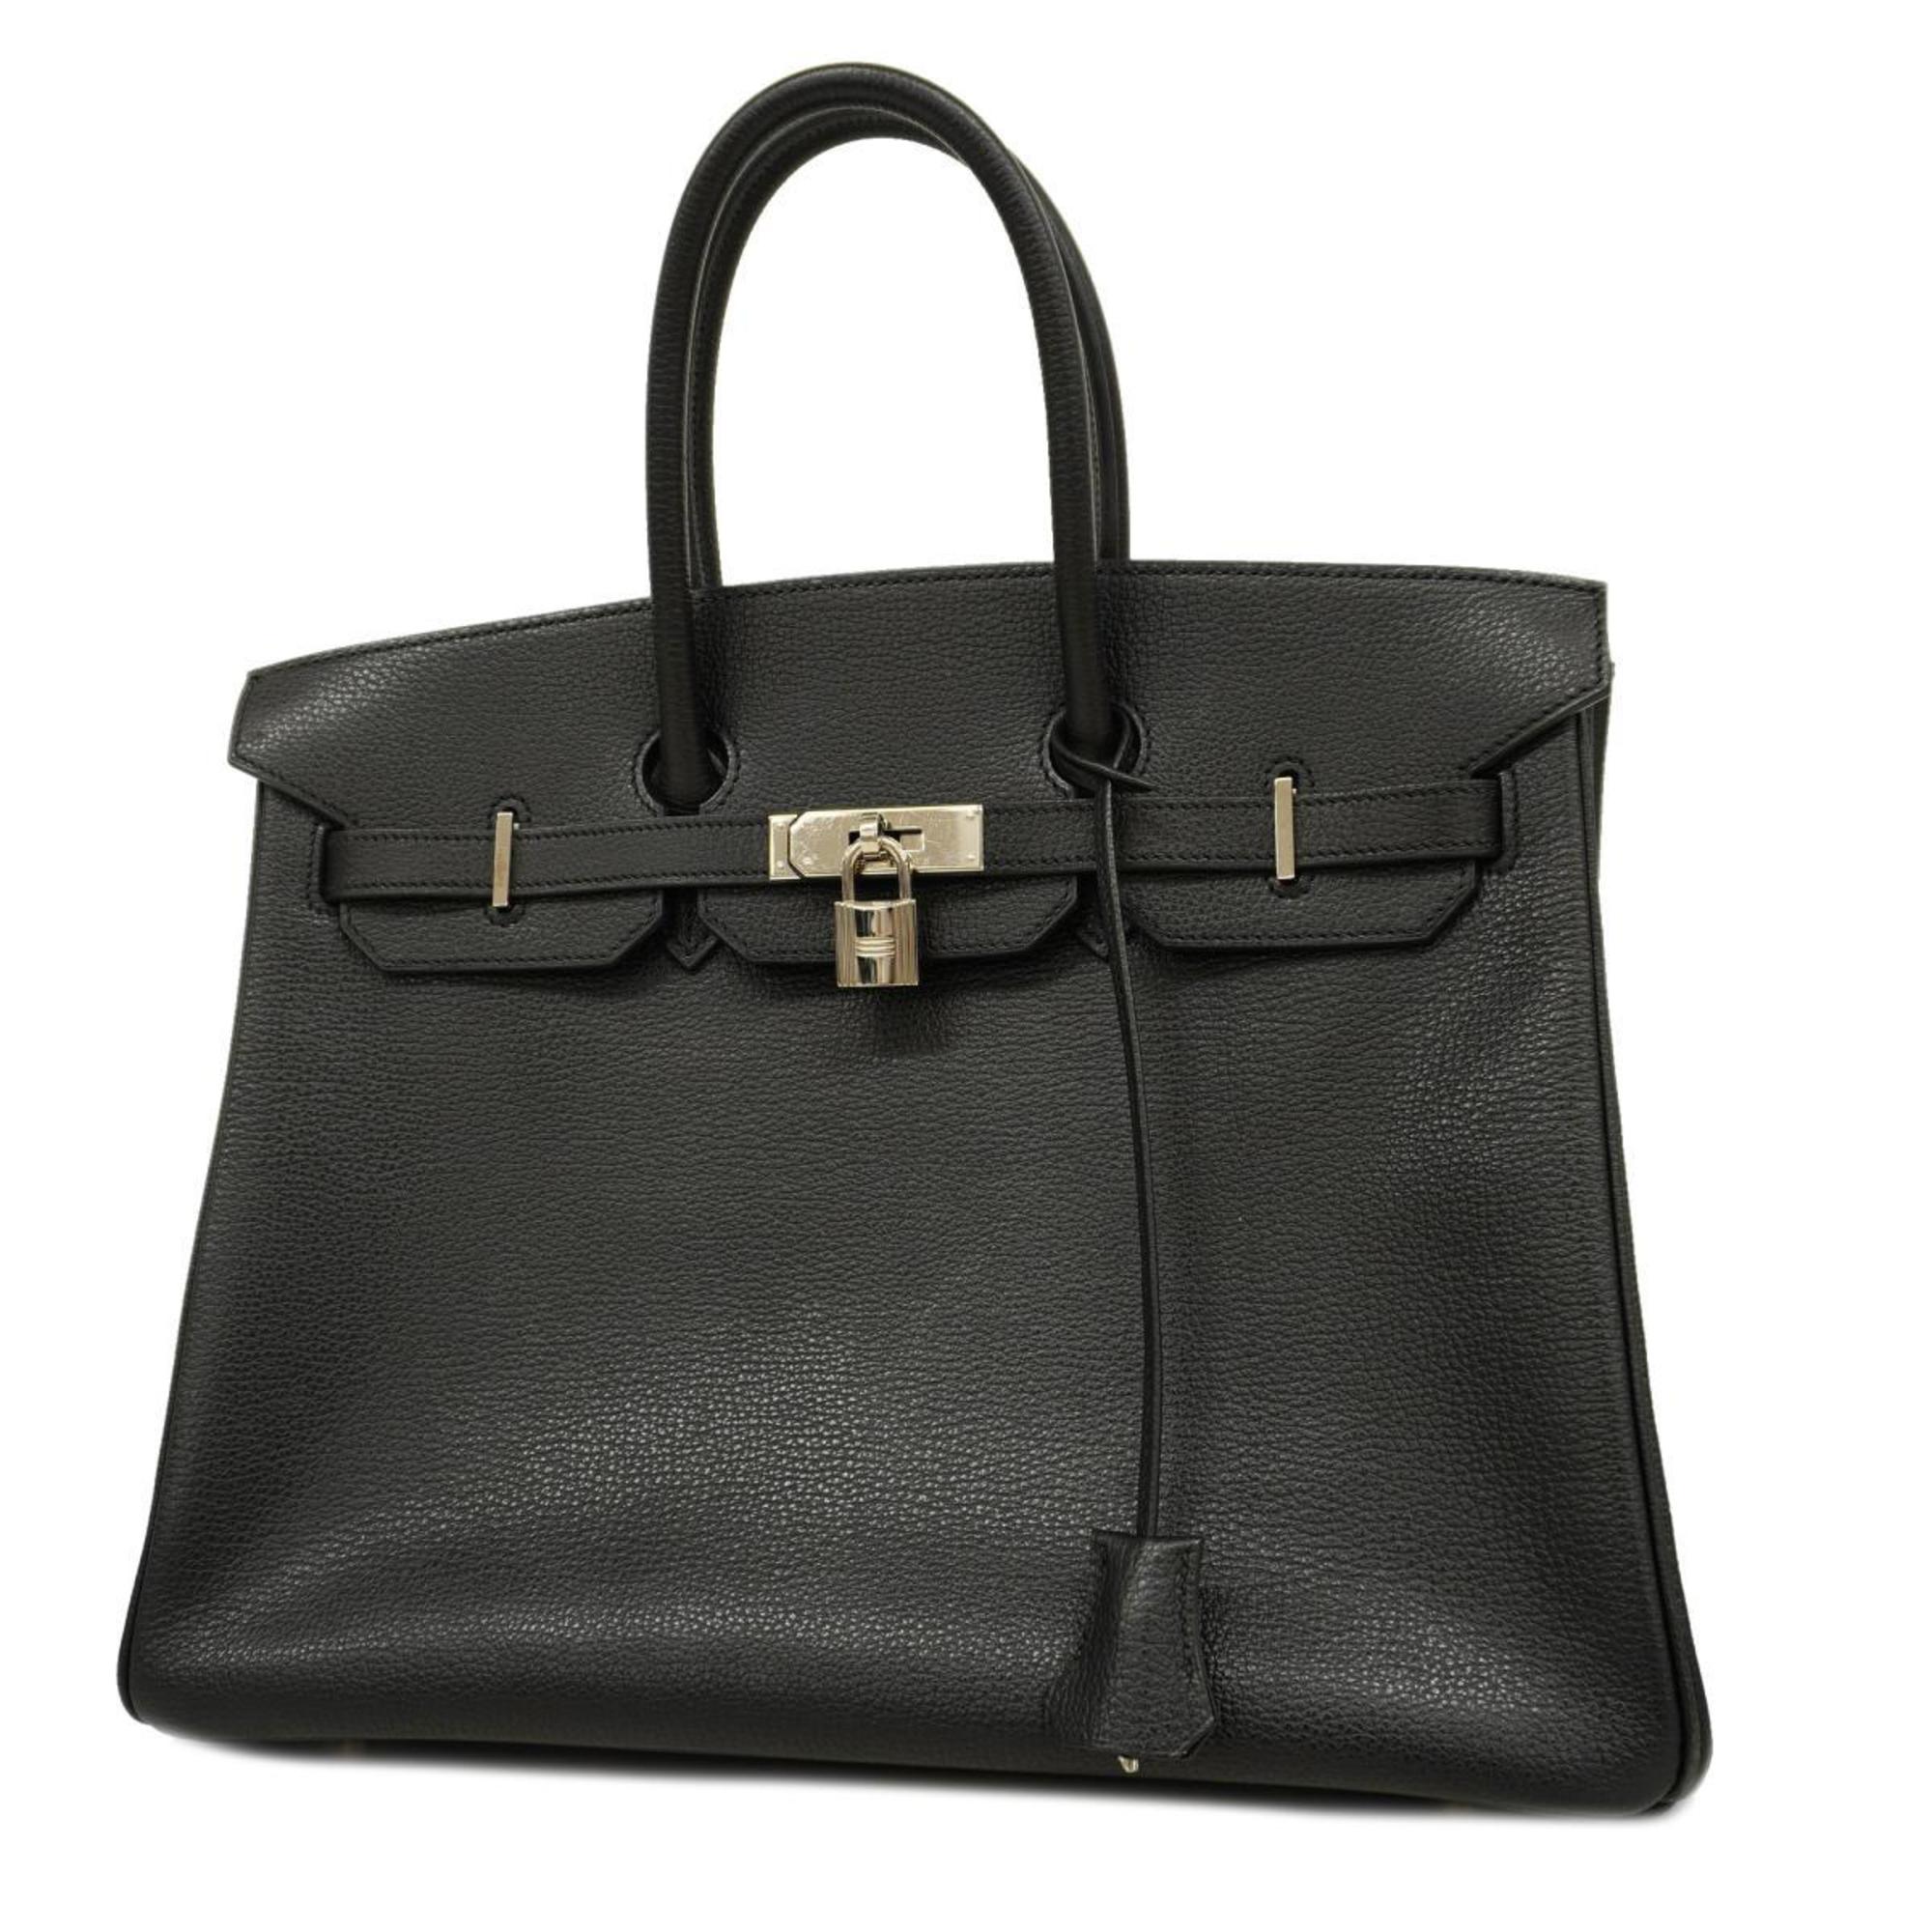 Hermes handbag Birkin 35 □I stamp Vache Liegée black ladies